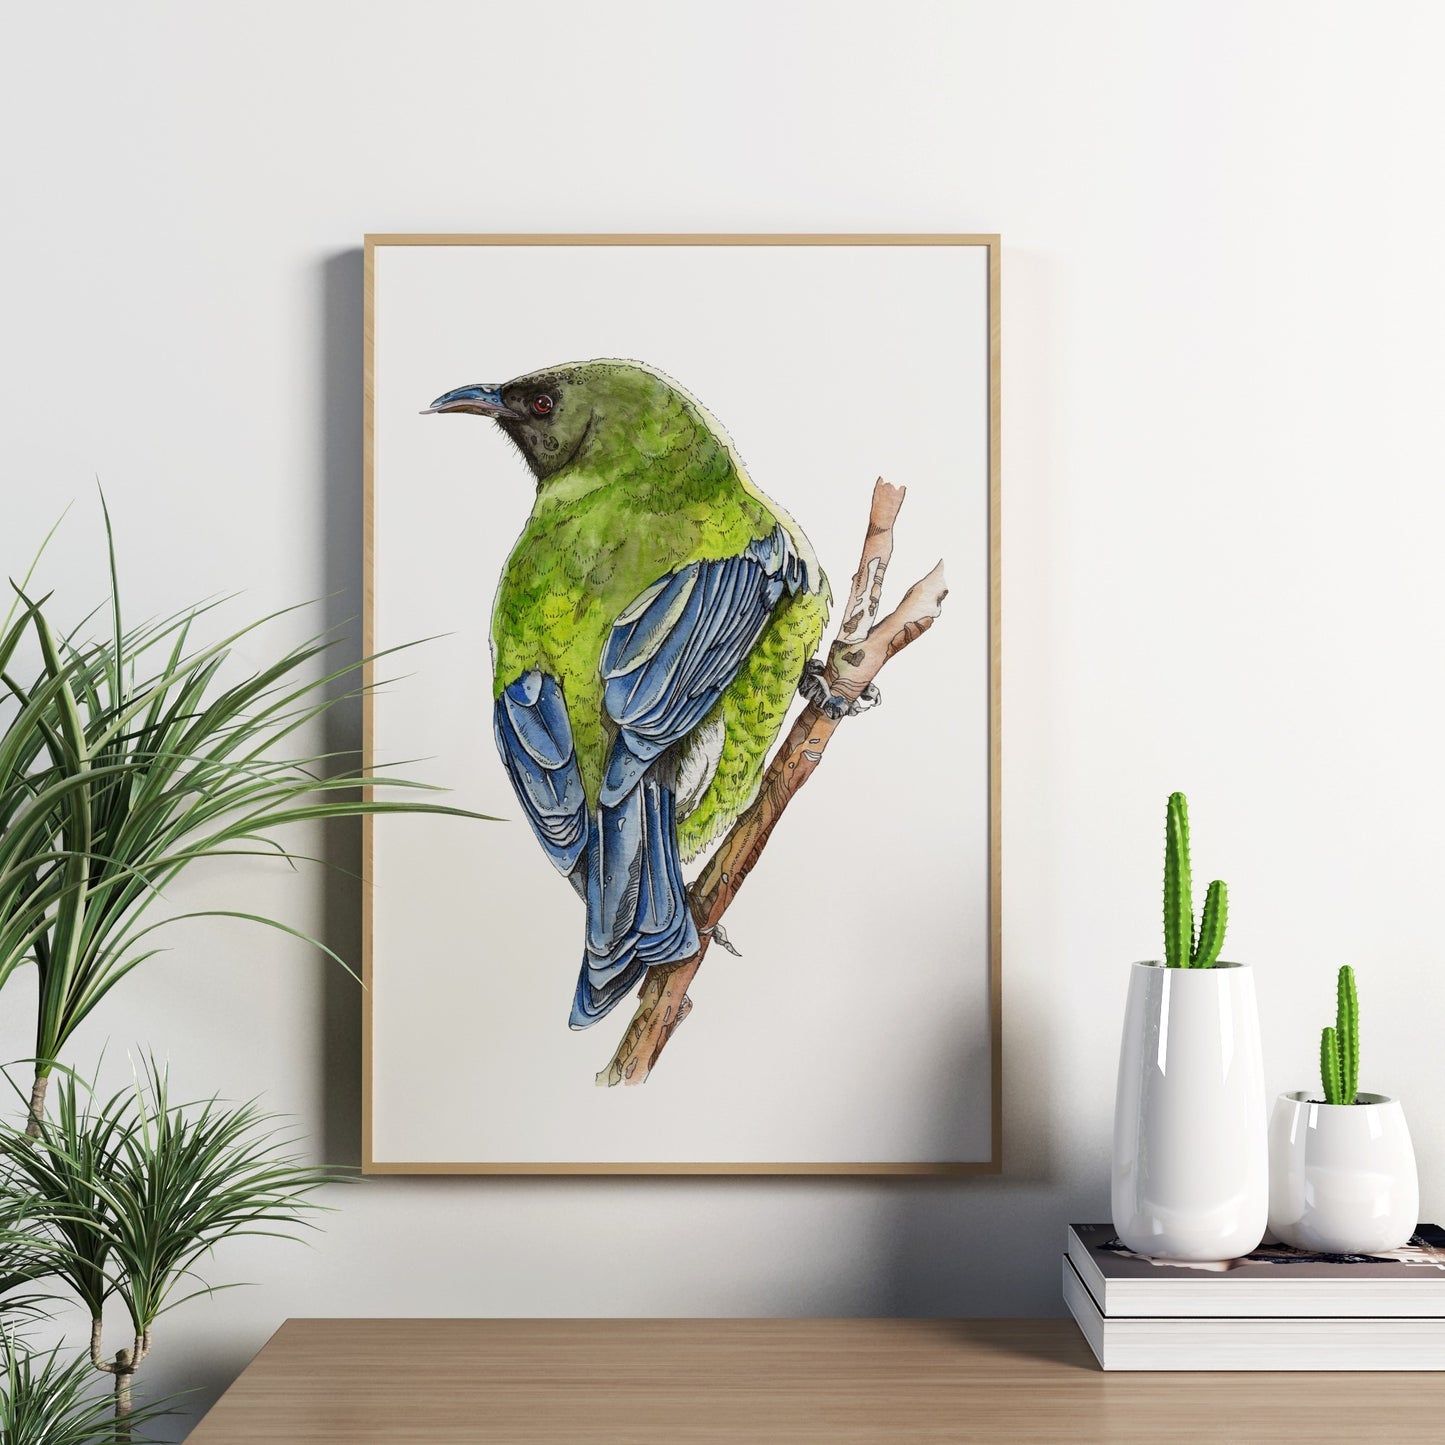 Watercolour art print of a Korimako bird sitting on a branch.